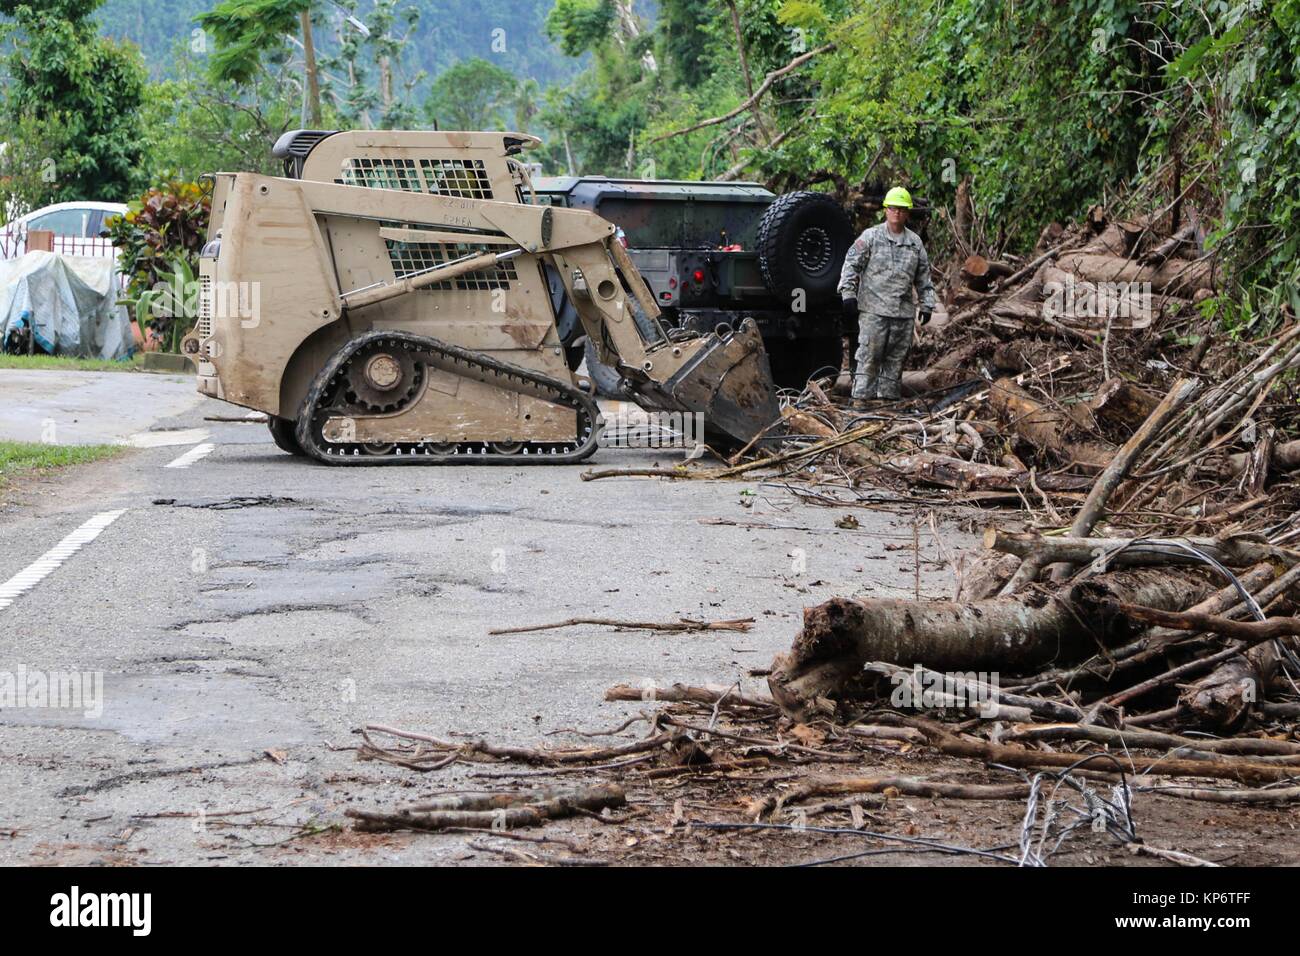 Us National Guard Soldaten Rückstände vom Straße 123 bei Hilfsmaßnahmen in den Wirbelsturm Maria September 20, 2017 in Arecibo, Puerto Rico. (Foto von Alexis velez über Planetpix) Stockfoto